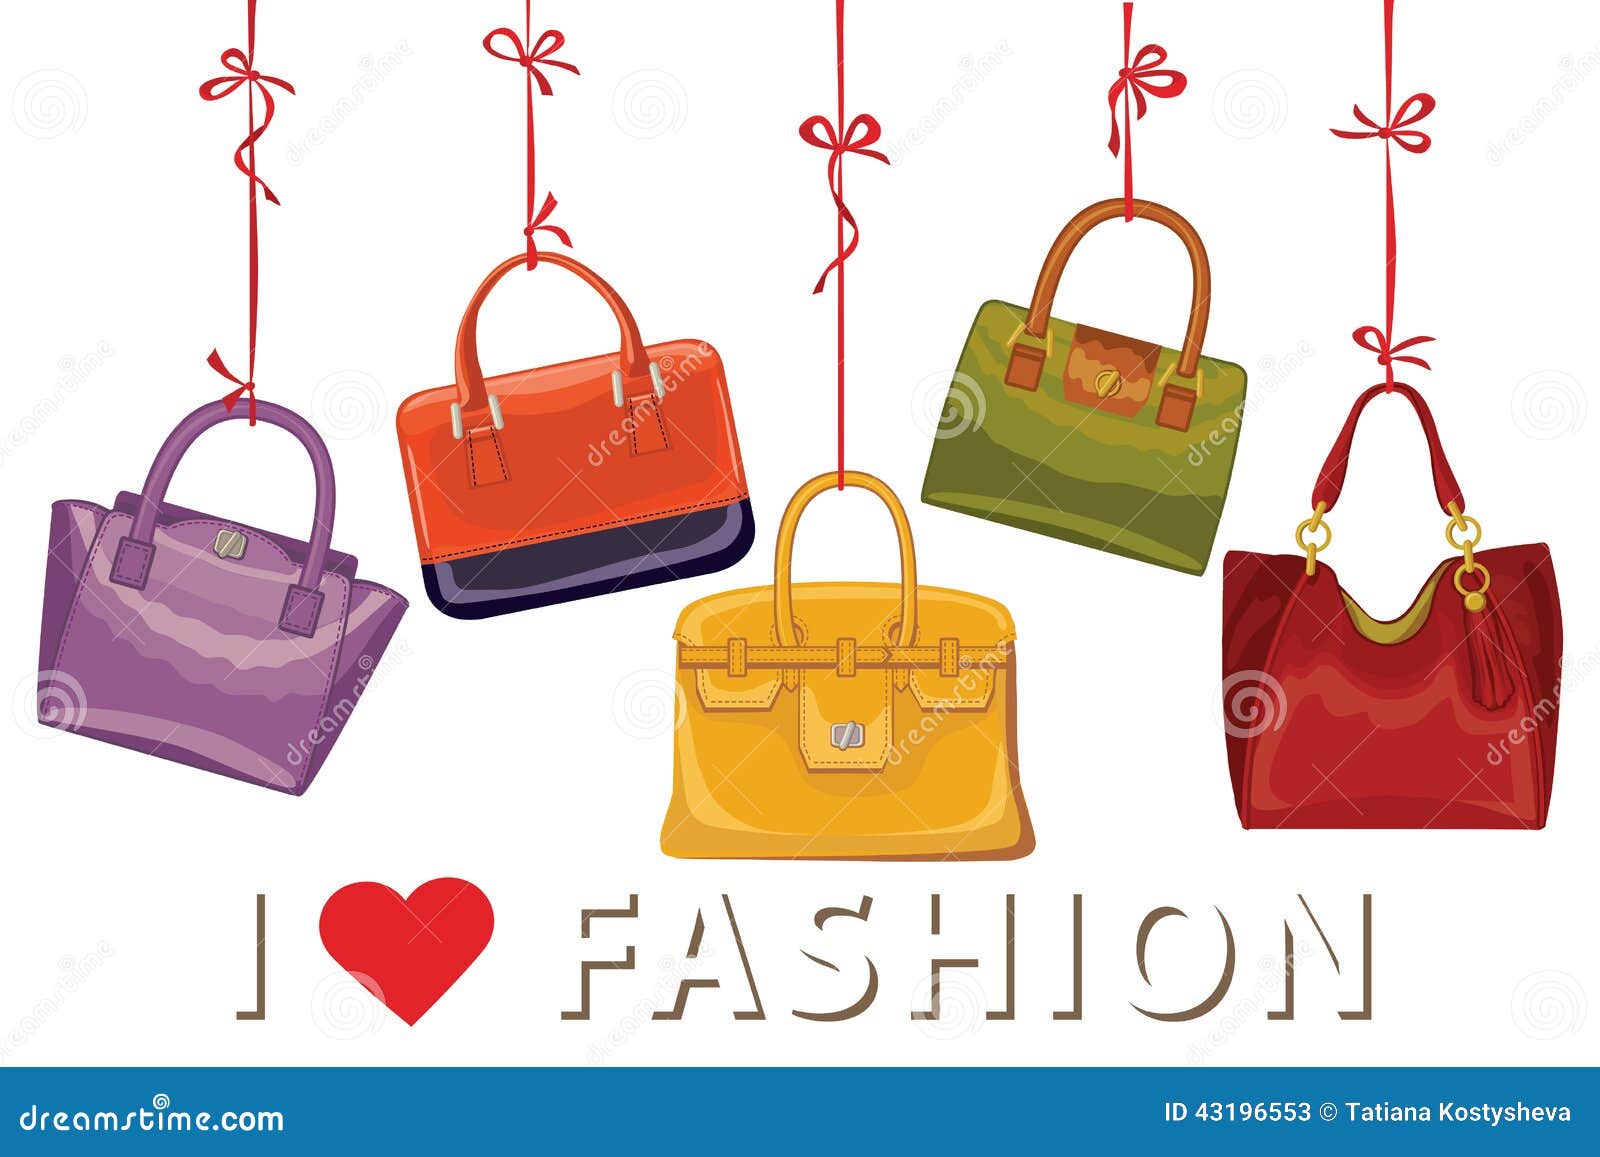 Bestsellers | Handbags for women by OLEADA